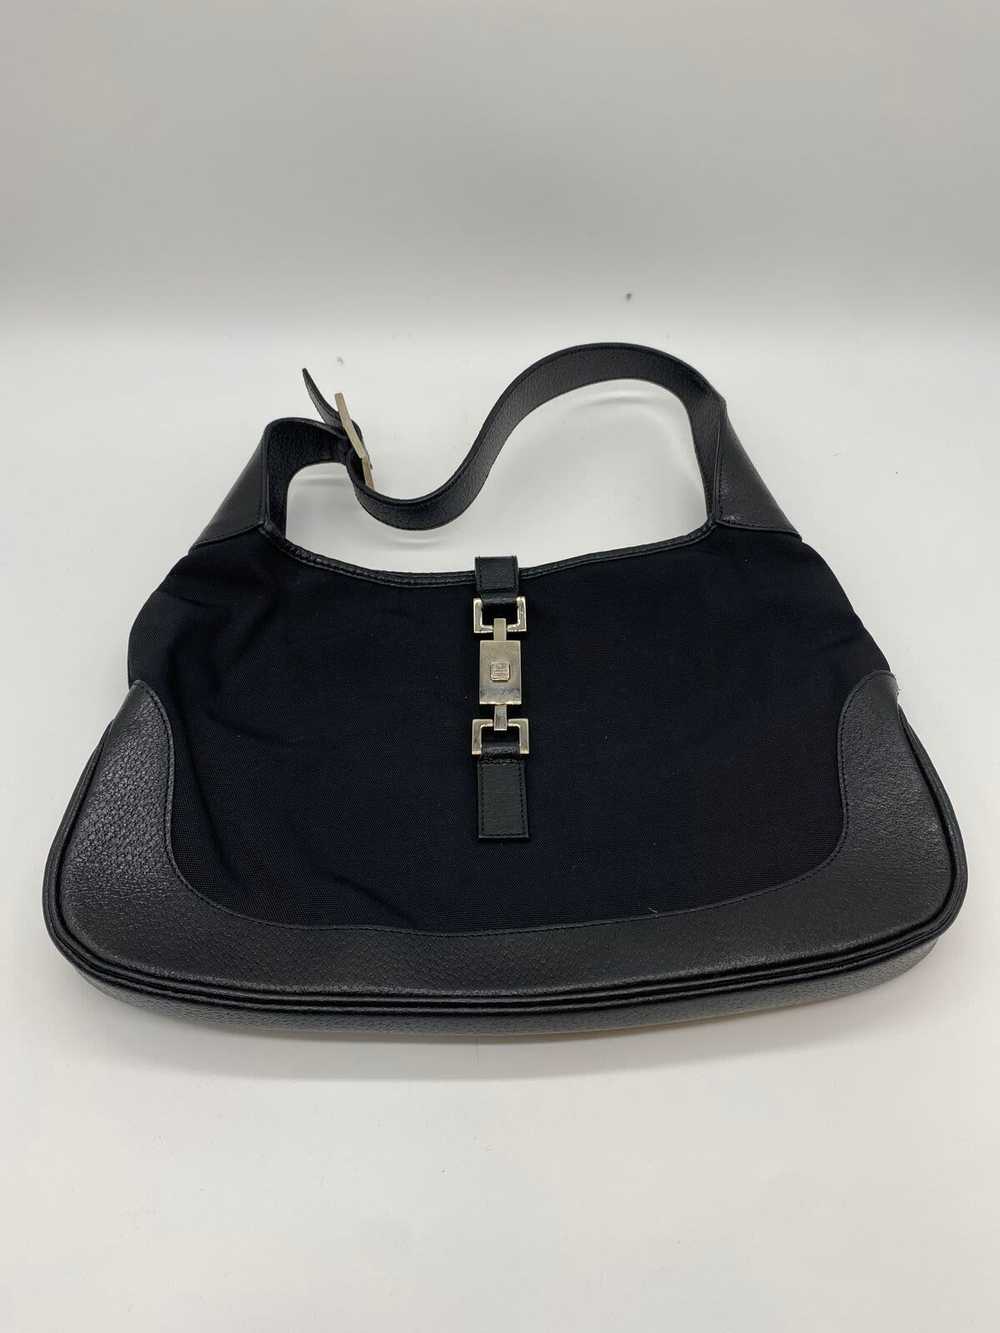 Gucci Black Shoulder Bag - image 1